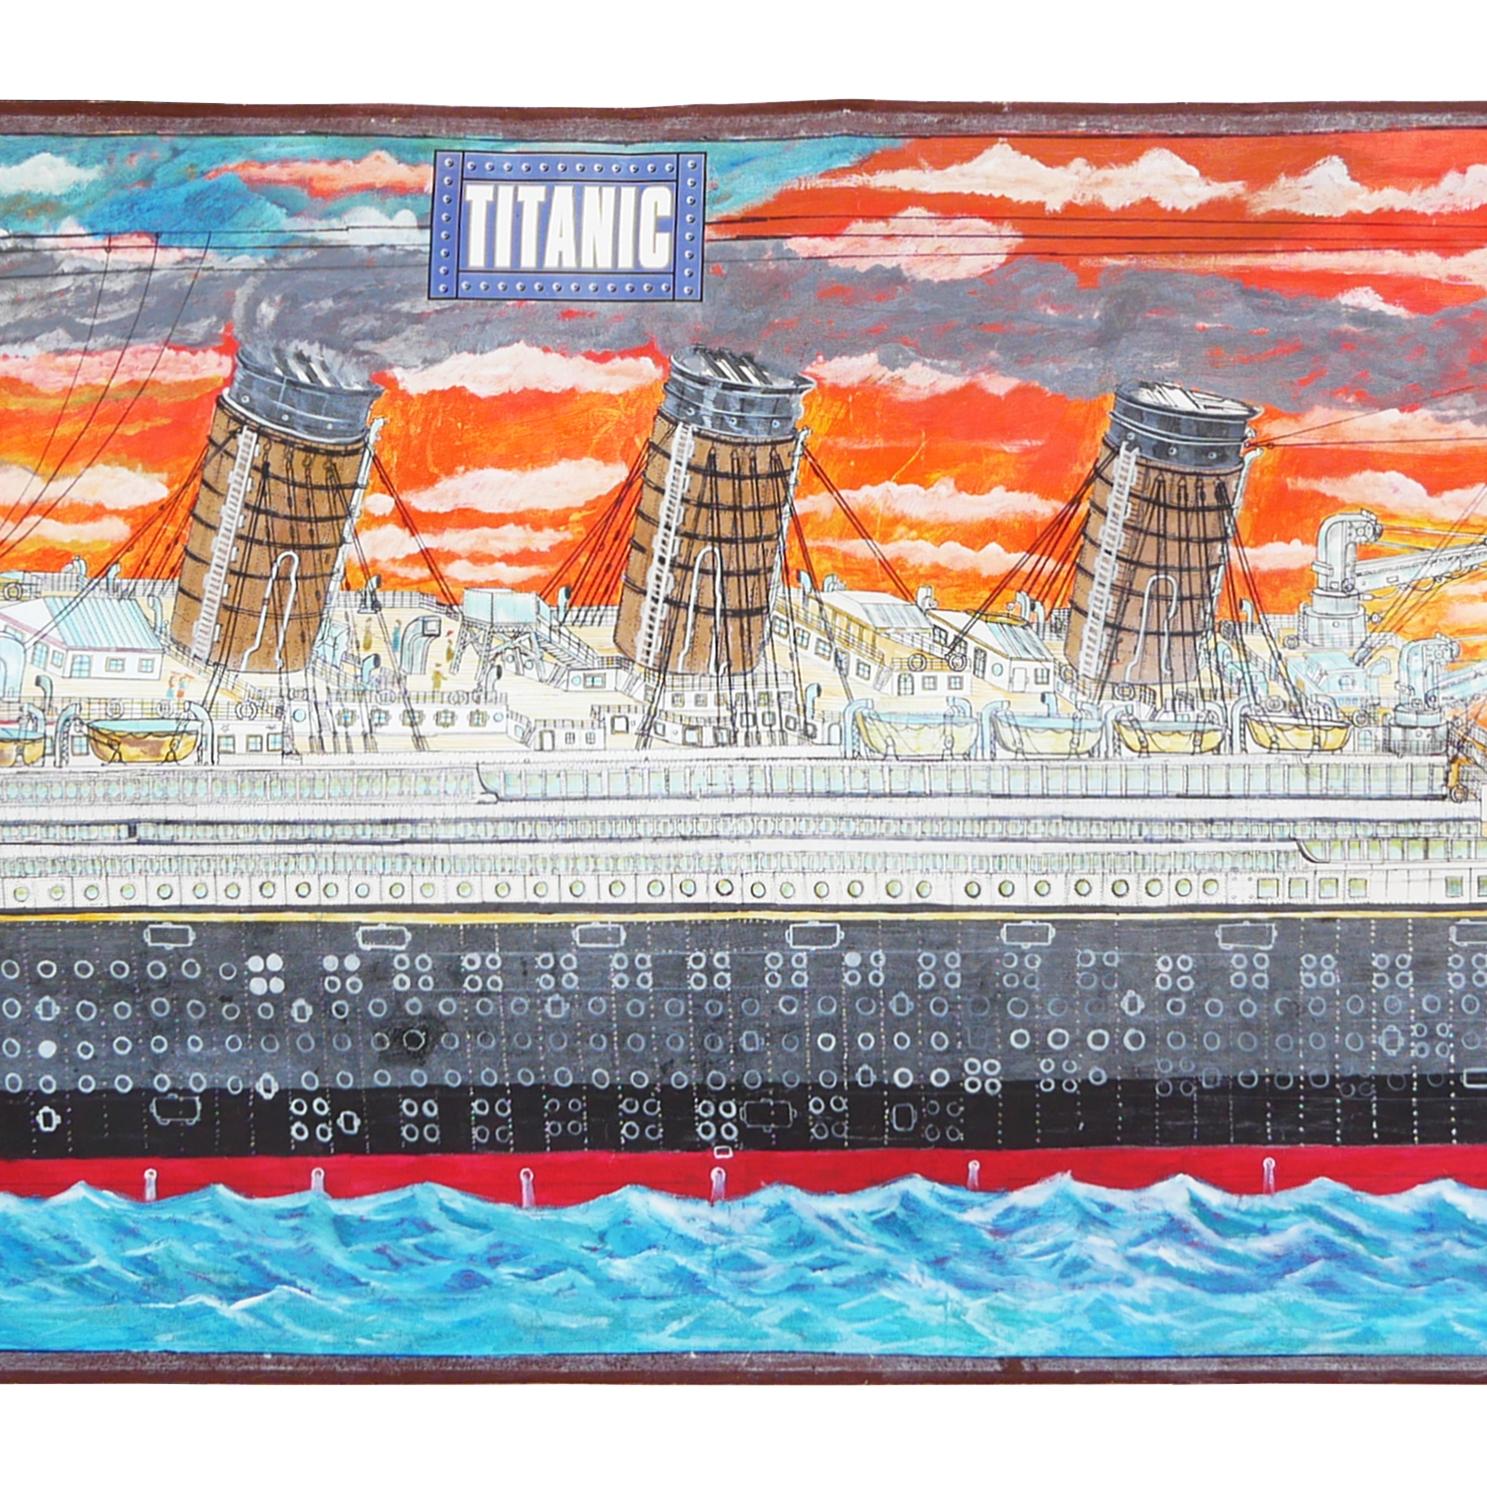 Blaue und orangefarbene abstrakte zeitgenössische Outsider-Kunst. Das Werk zeigt das riesige Titanic-Schiff vor einem dunkelorangen Himmel bei Sonnenuntergang. Das Porträt des Schiffskapitäns (Edward Smith) ist in der oberen linken Ecke